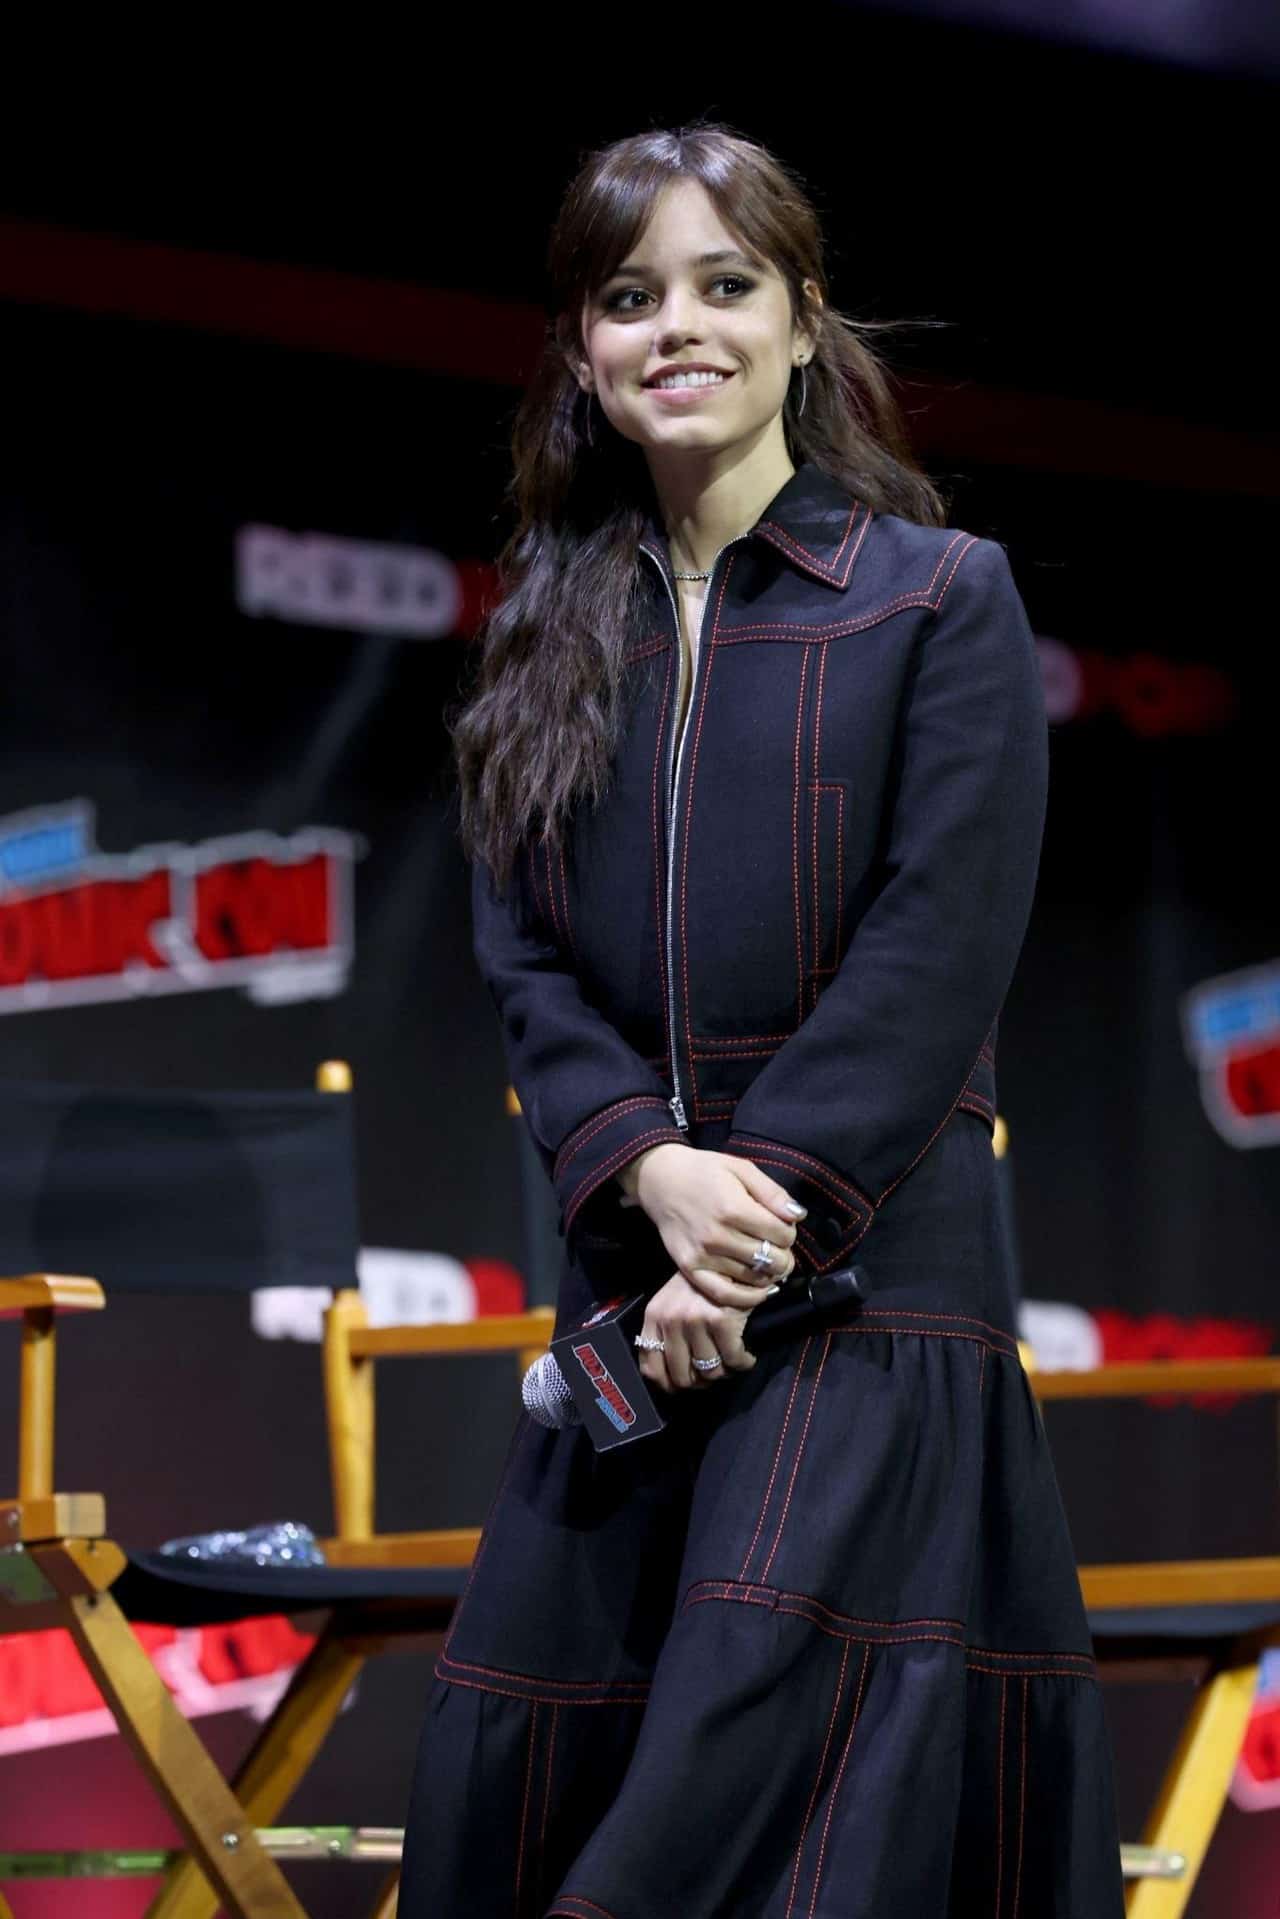 Jenna Ortega Attends a Panel Talk at 2022's New York Comic Con